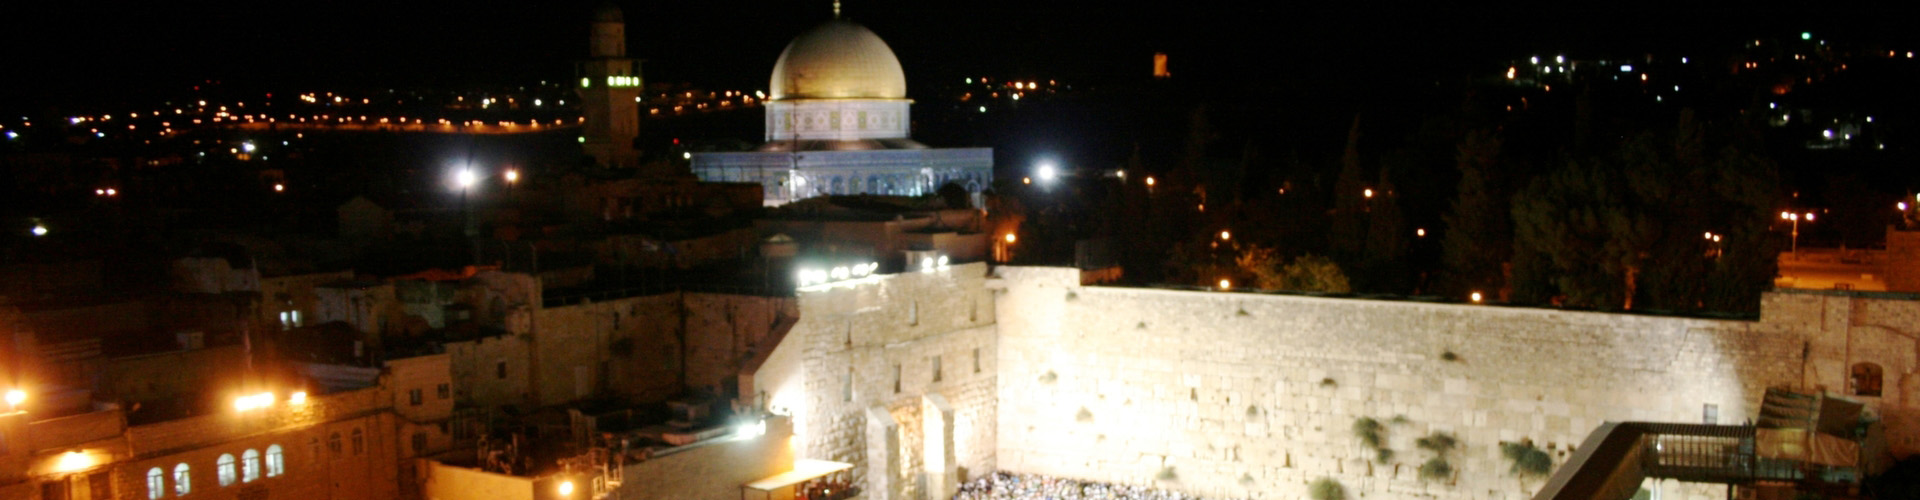 סיורי סליחות בירושלים